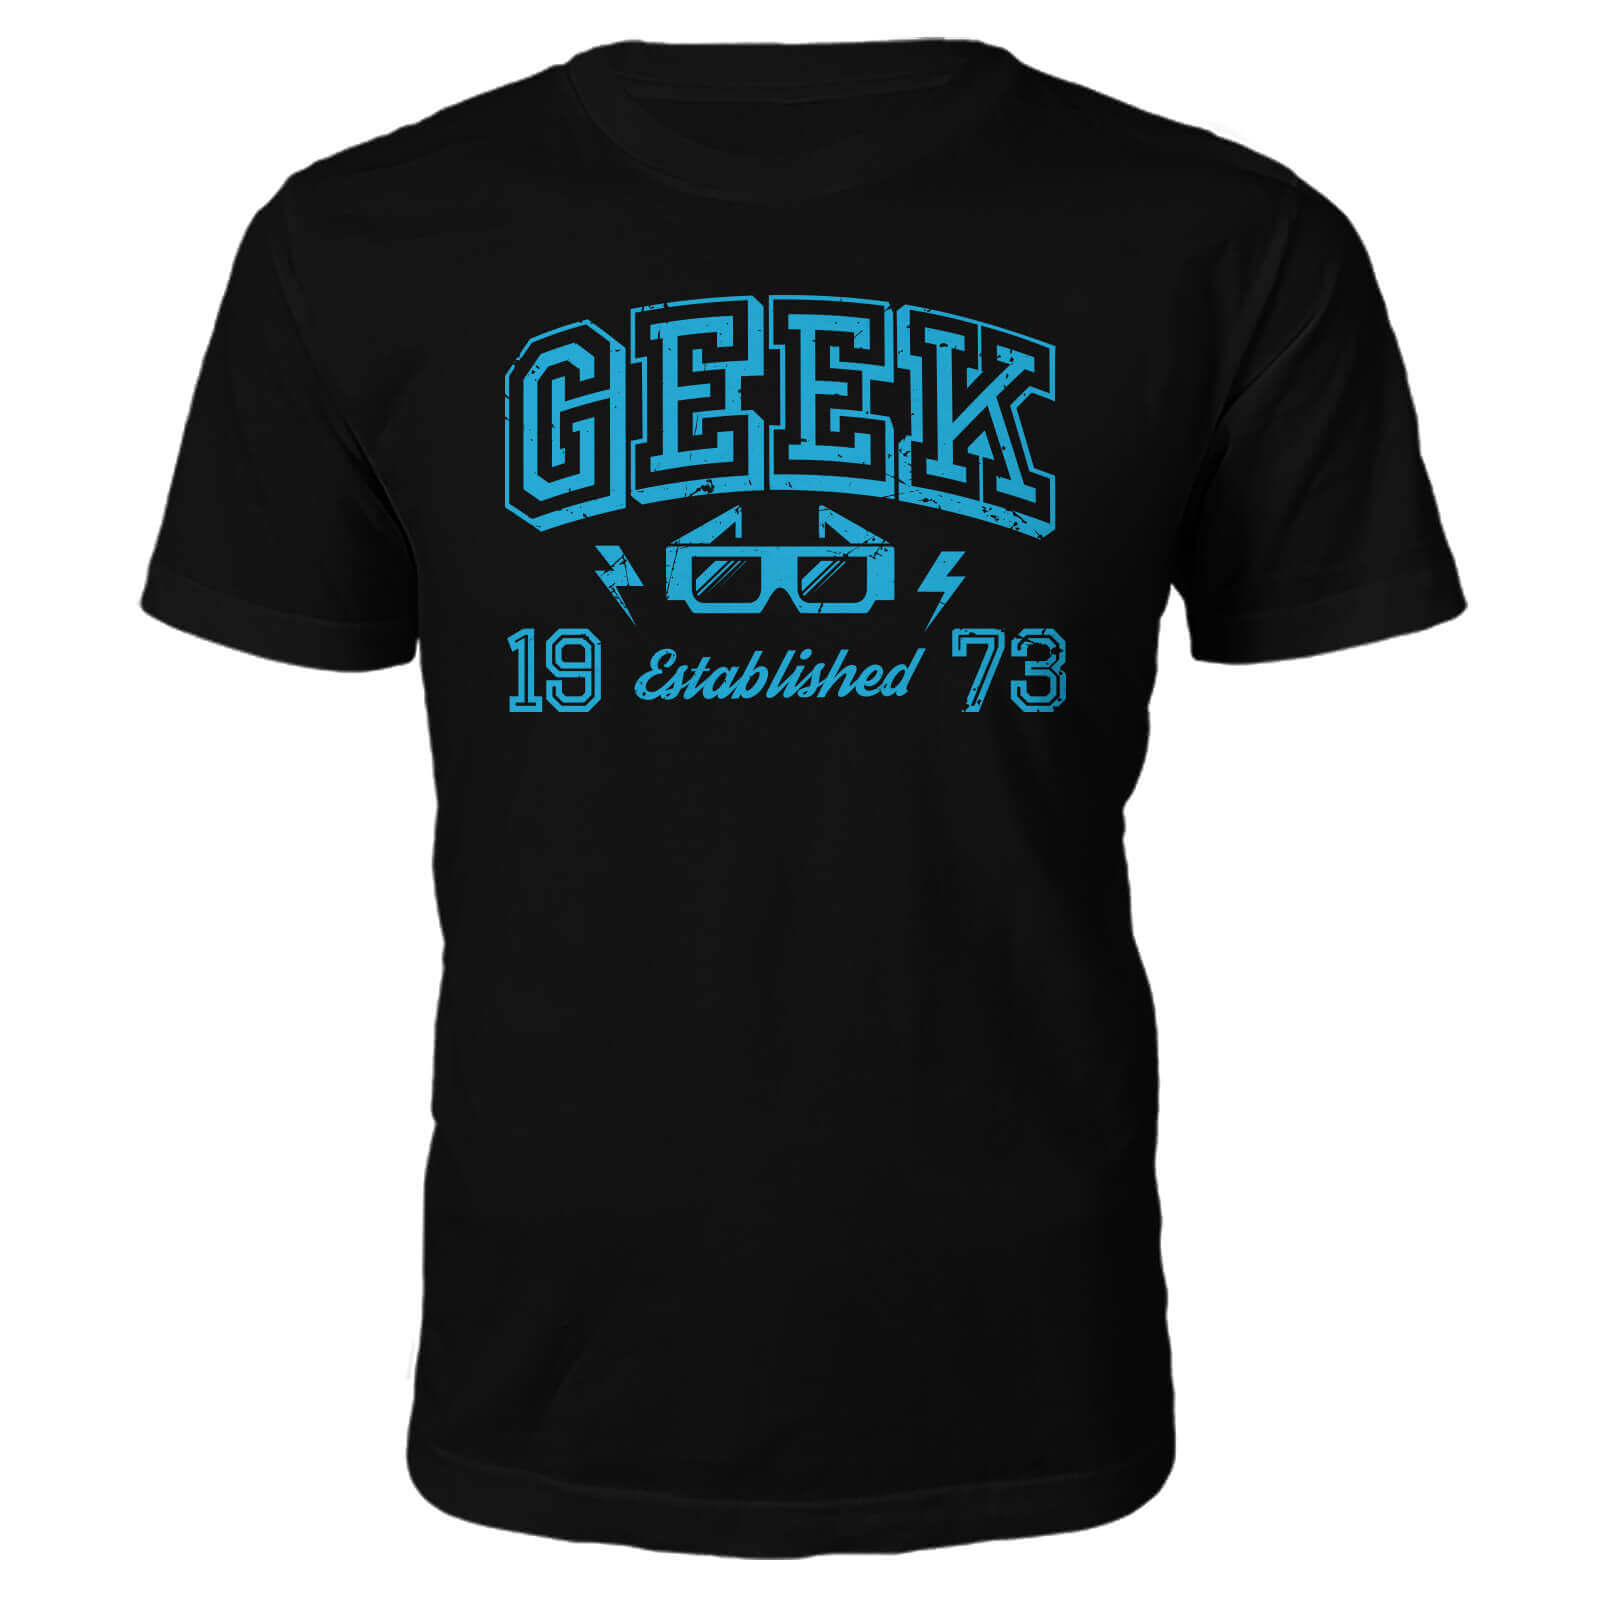 Geek Established 1970's T-Shirt- Black - L - 1973